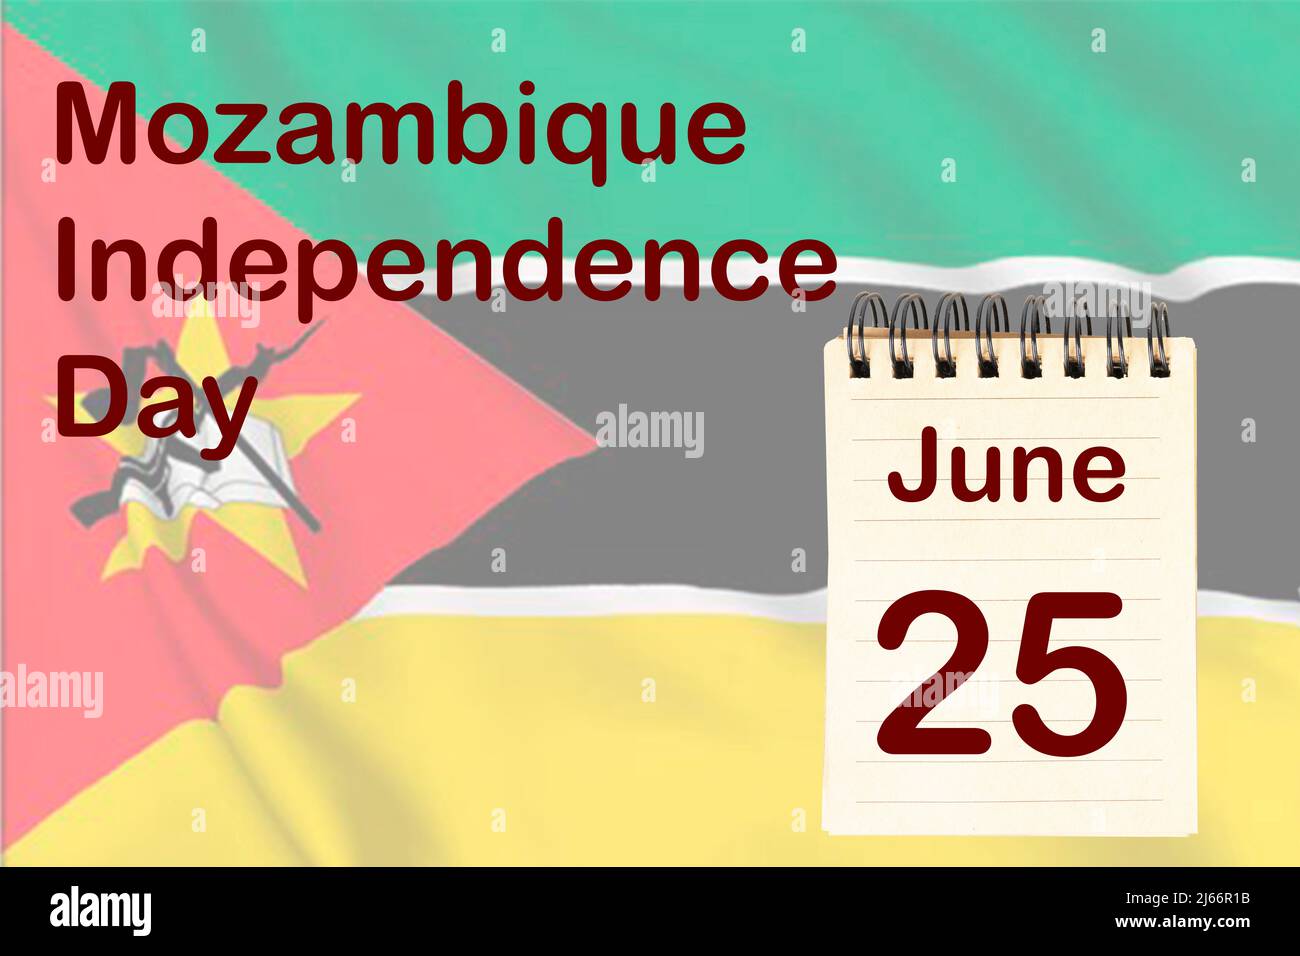 La celebrazione della Giornata dell'Indipendenza del Mozambico con la bandiera e il calendario che indica il 25 giugno Foto Stock